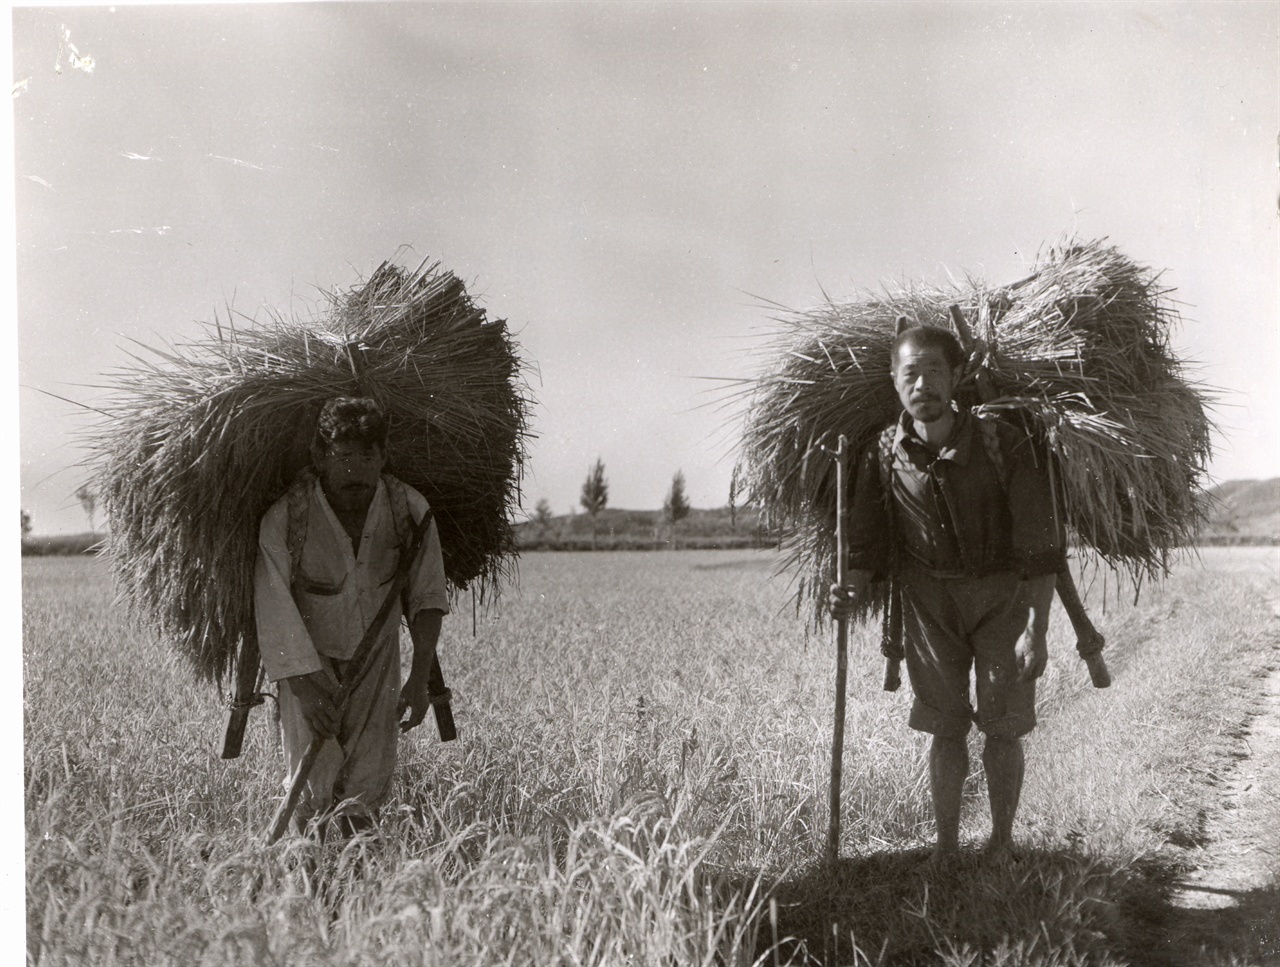 1952. 9. 26. 두 농부가 추수한 볏단을 지게로 나르고 있다. 